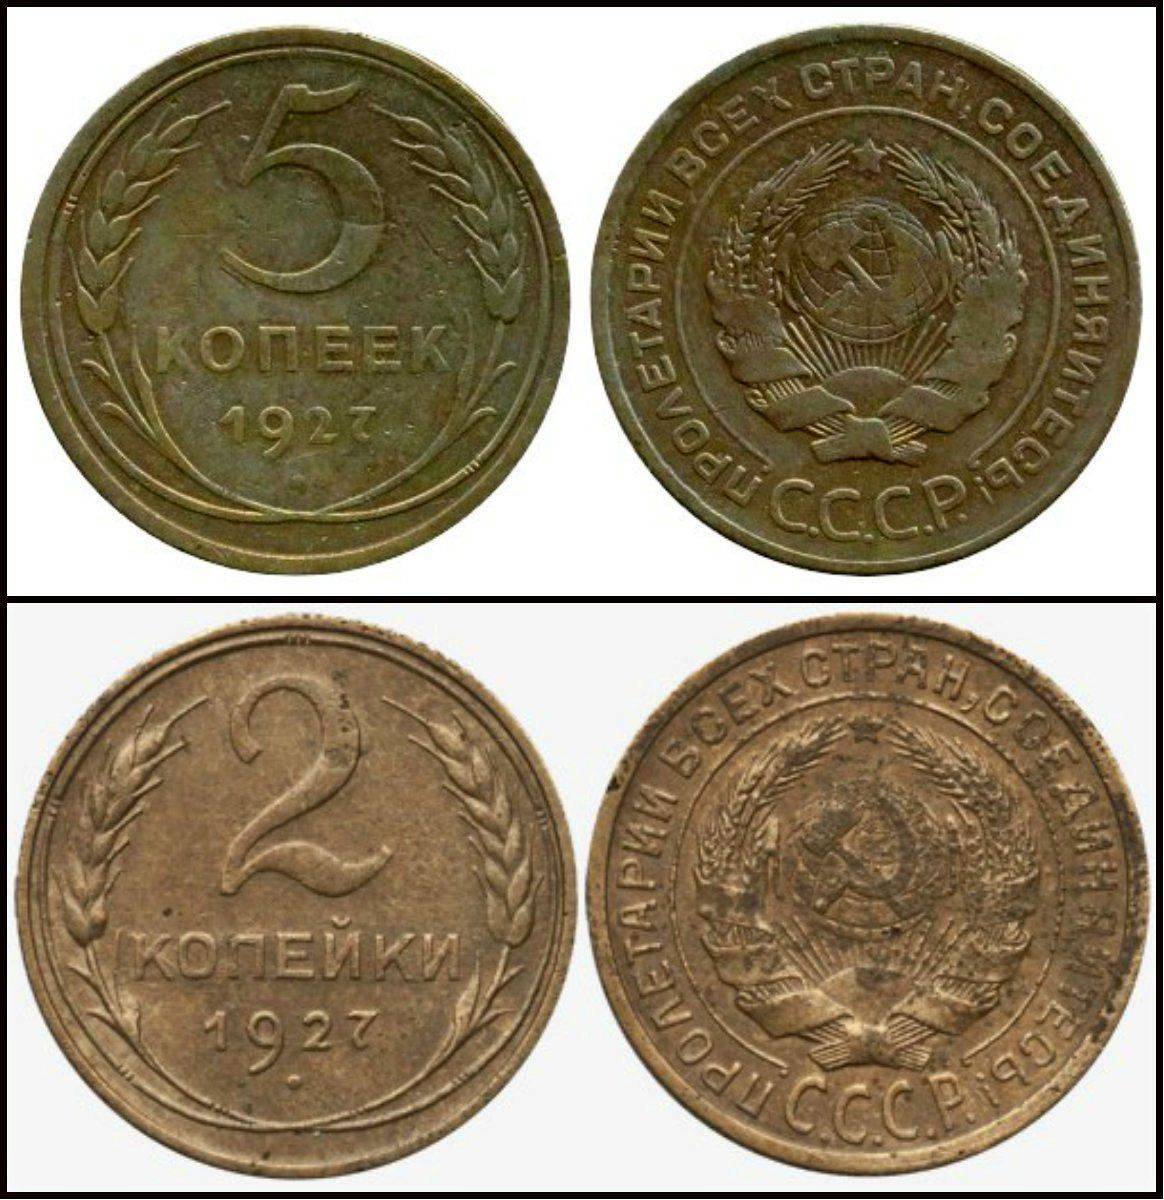 Самые дорогие монеты ссср: редкие советские монеты